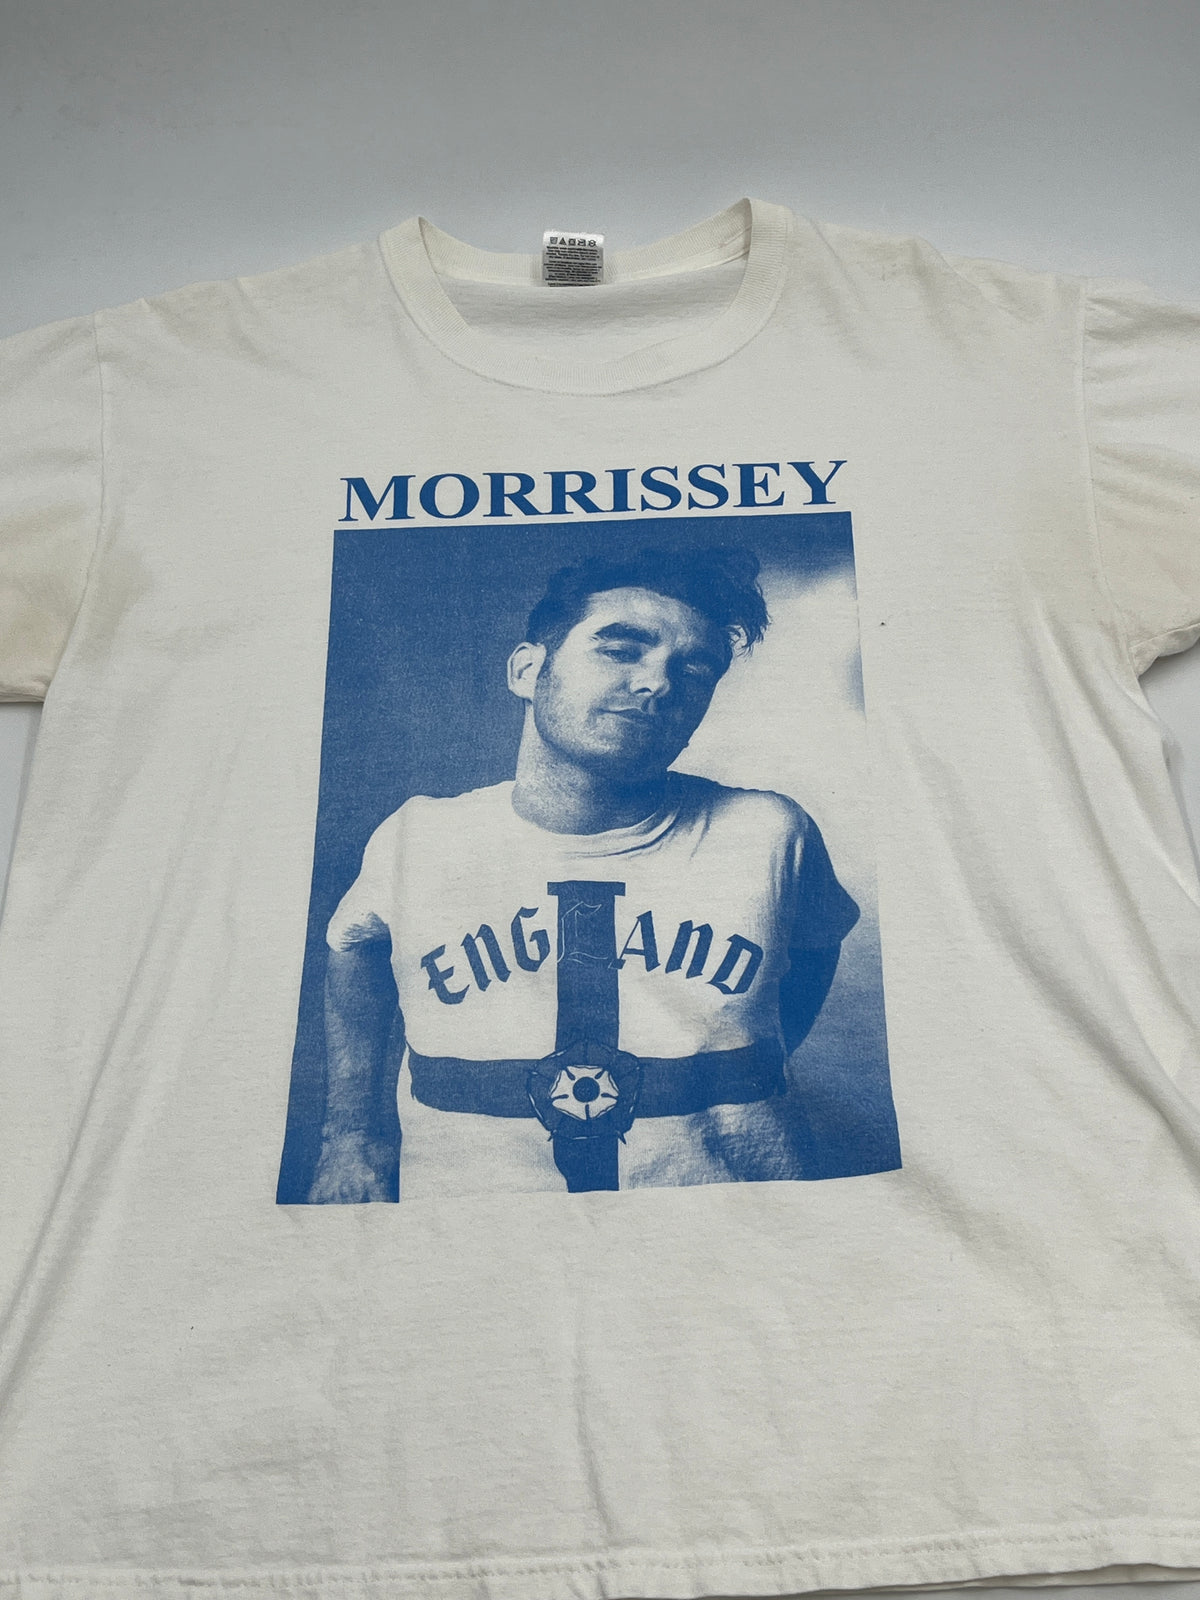 Morrissey Portrait Tee